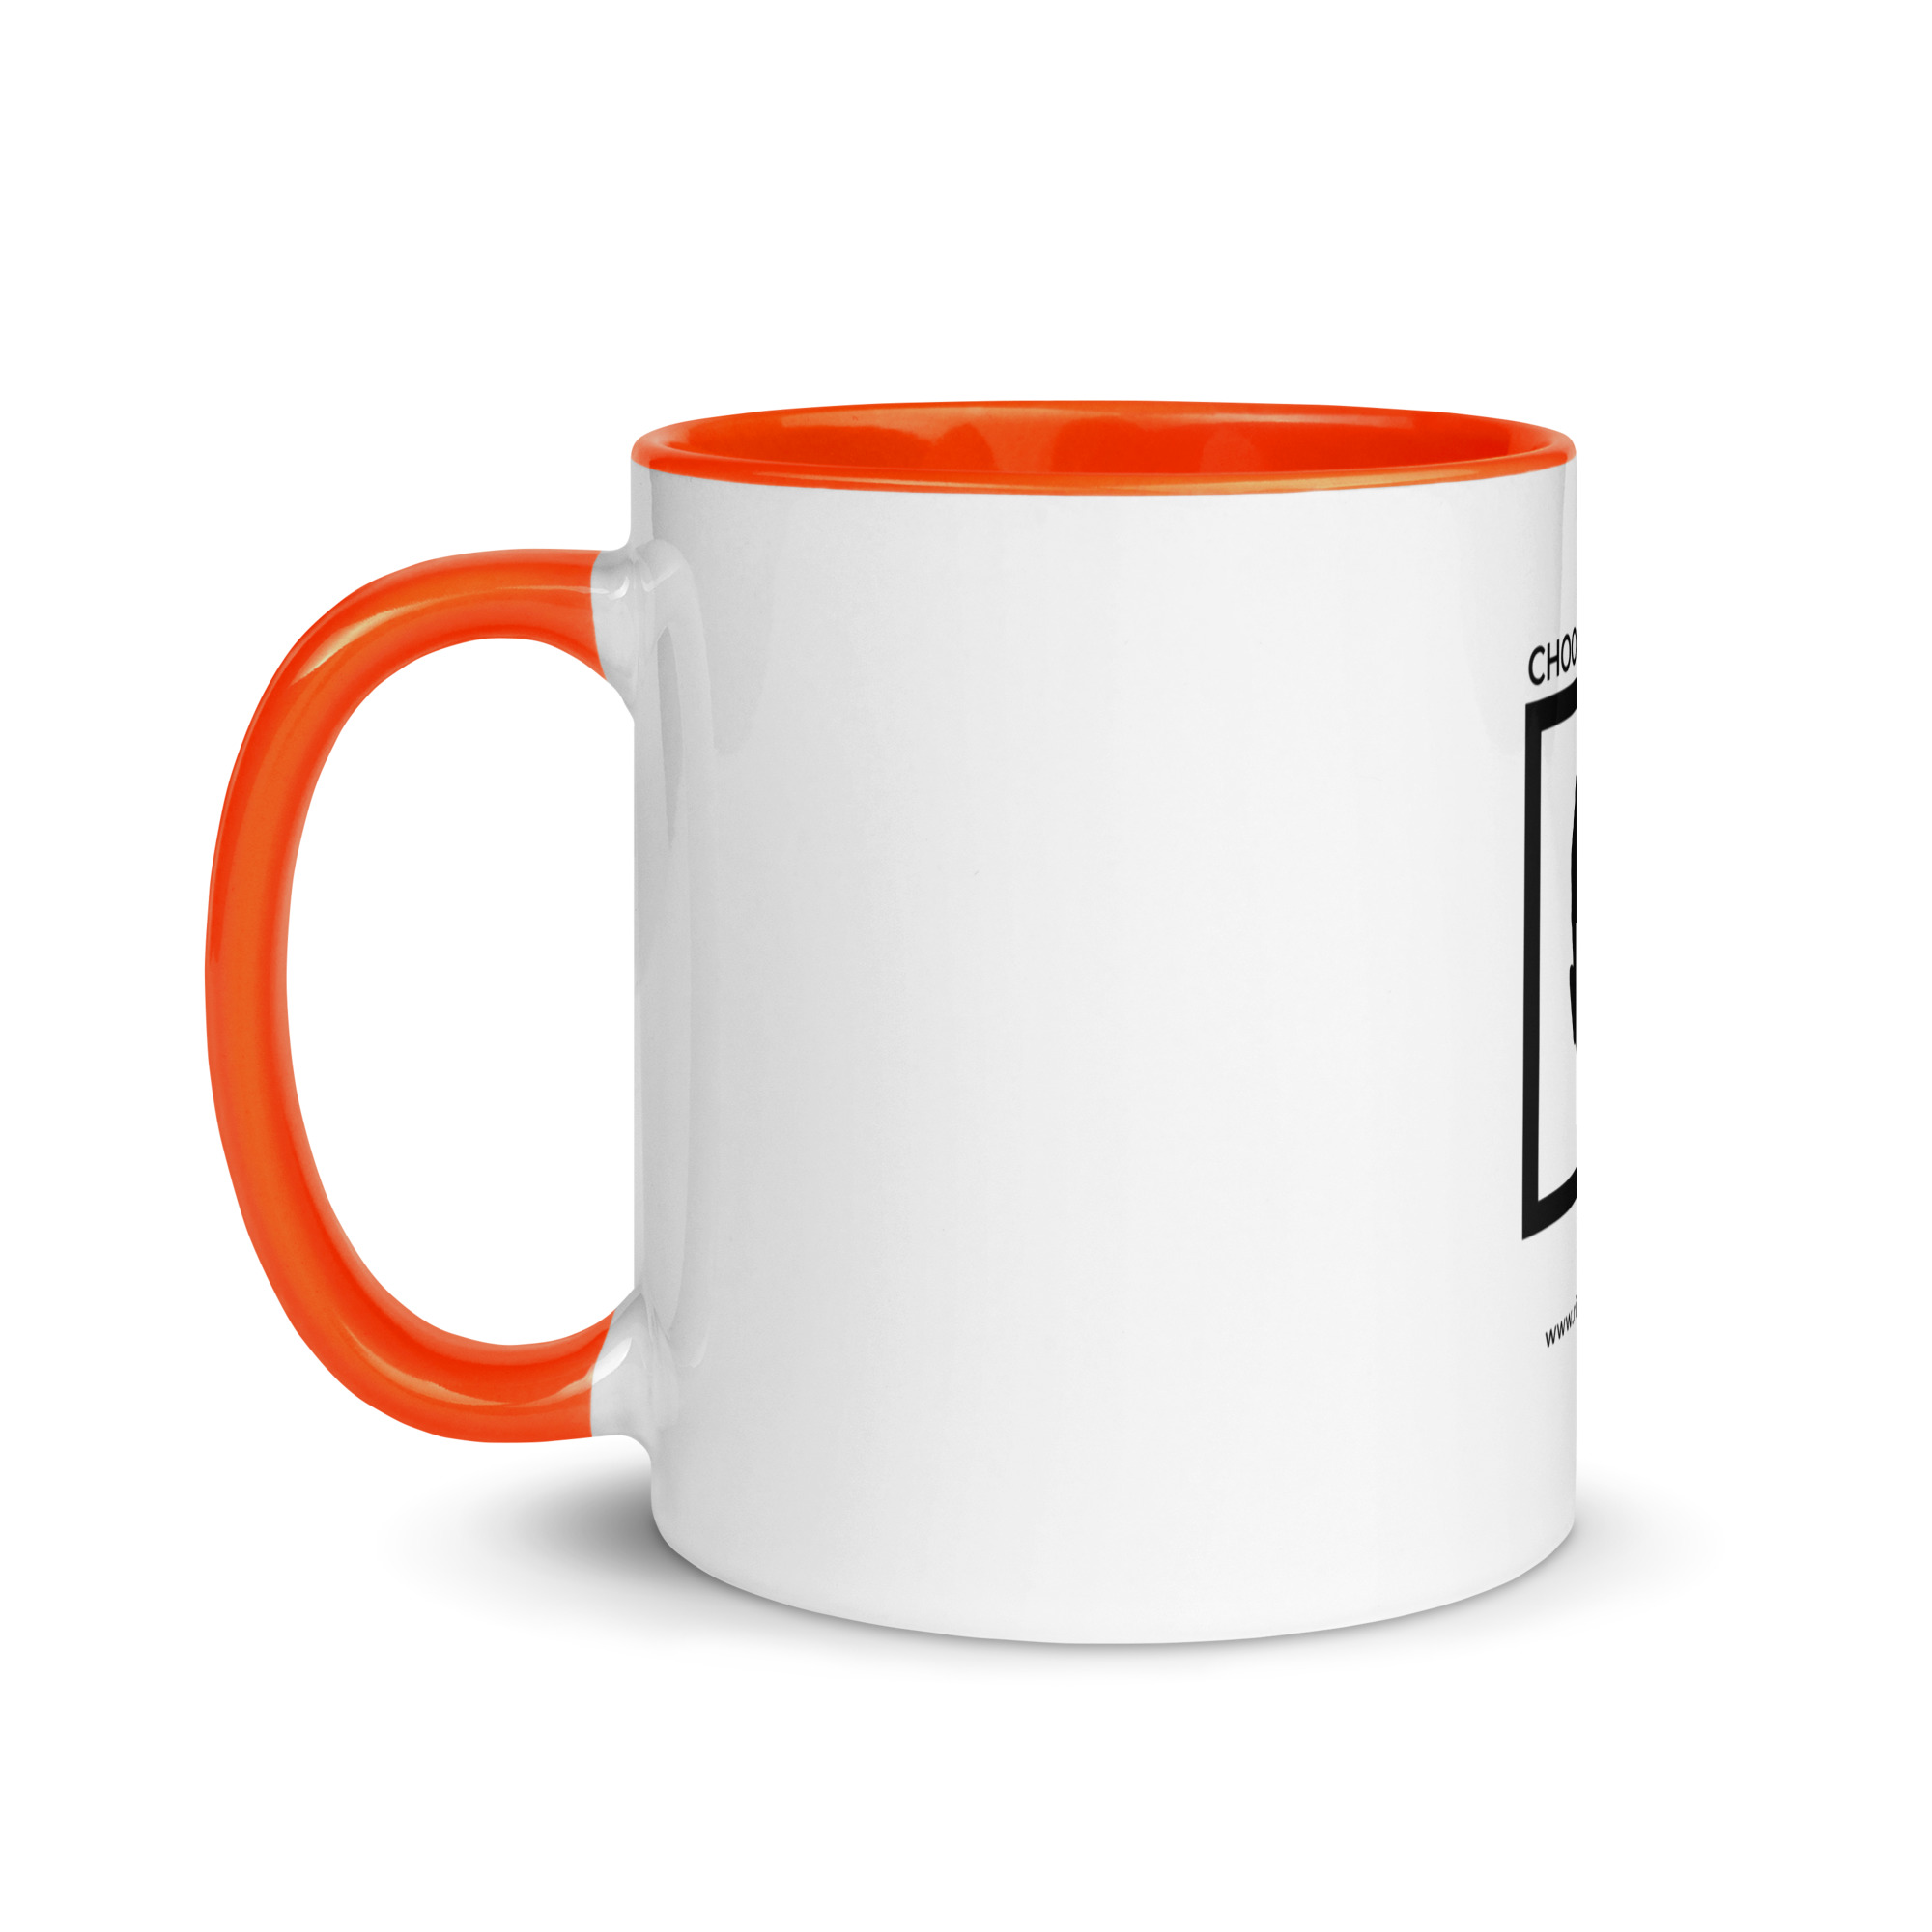 white-ceramic-mug-with-color-inside-orange-11-oz-left-6522a1a404003.jpg